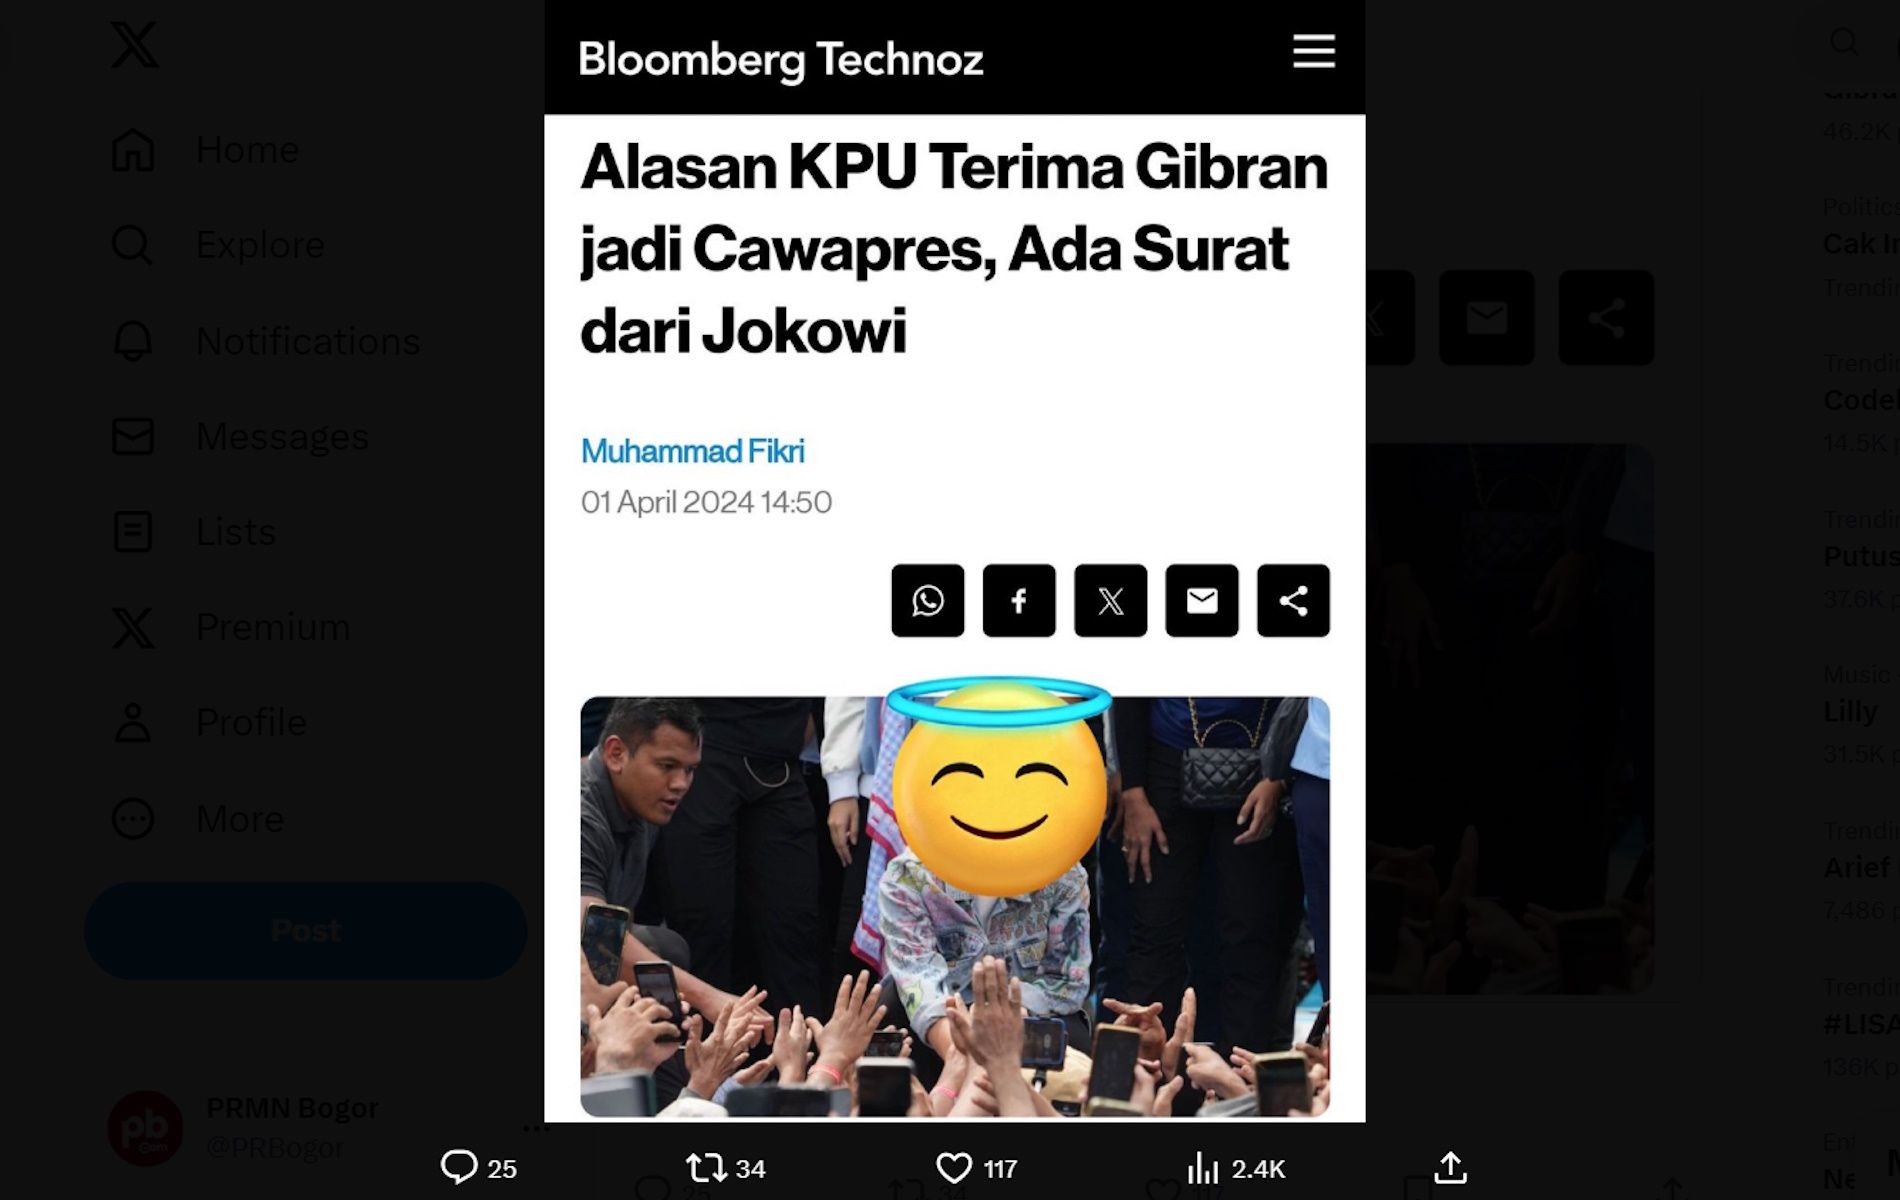 Unggahan yang menarasikan KPU terima Gibran jadi Cawapres karena terima surat dari Jokowi. 